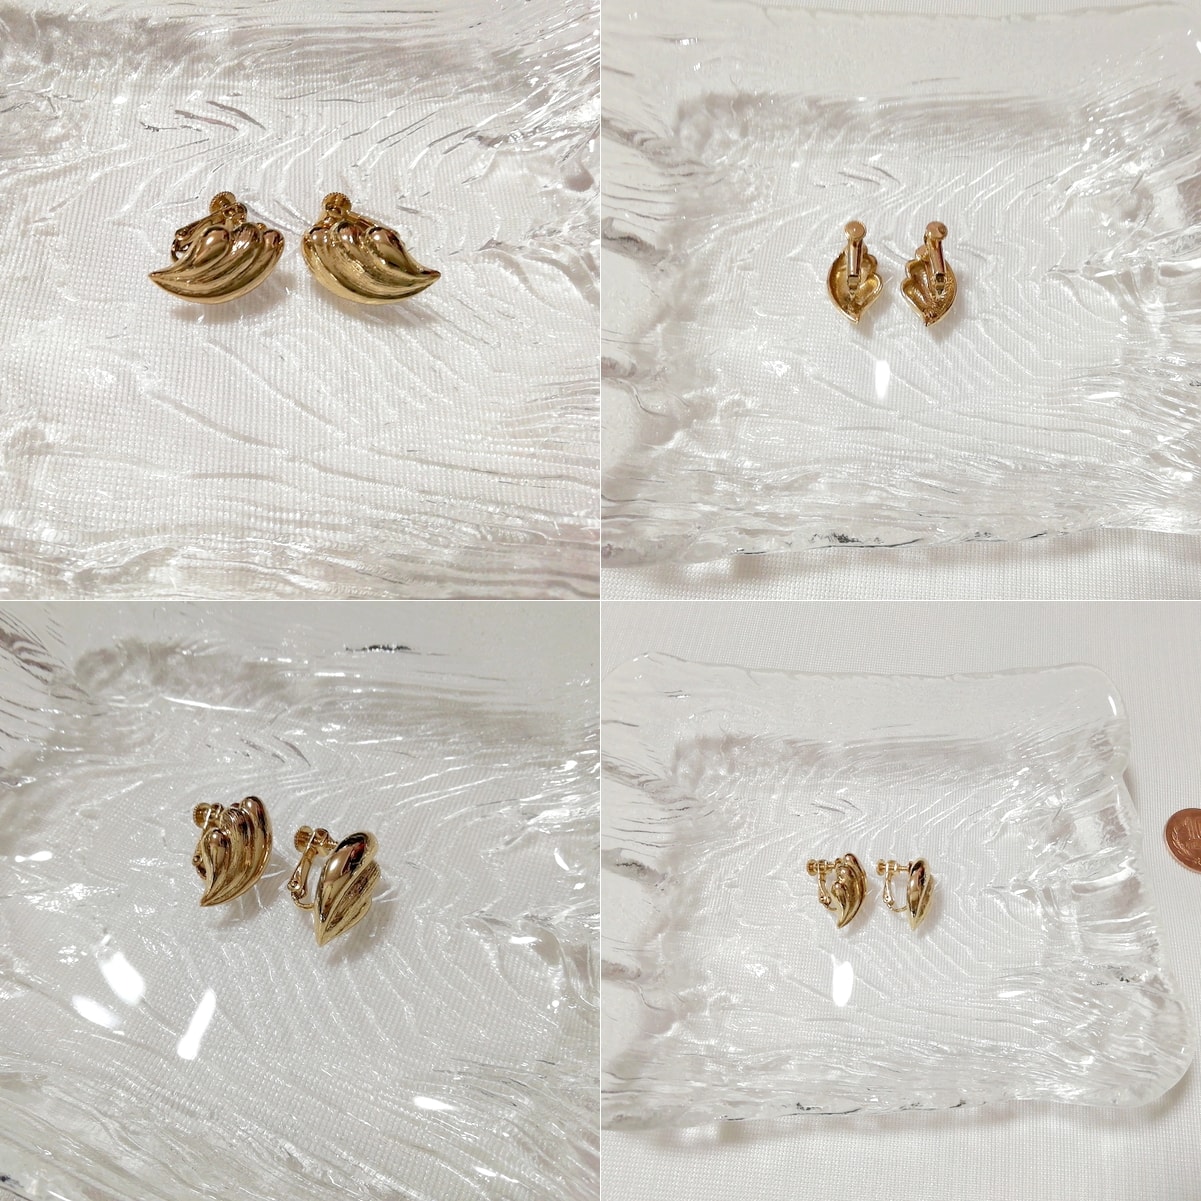 金色葉っぱ型イヤリング/ジュエリー/アクセサリー Golden leaf earrings jewelry accessories, レディースアクセサリー, イヤリング, その他